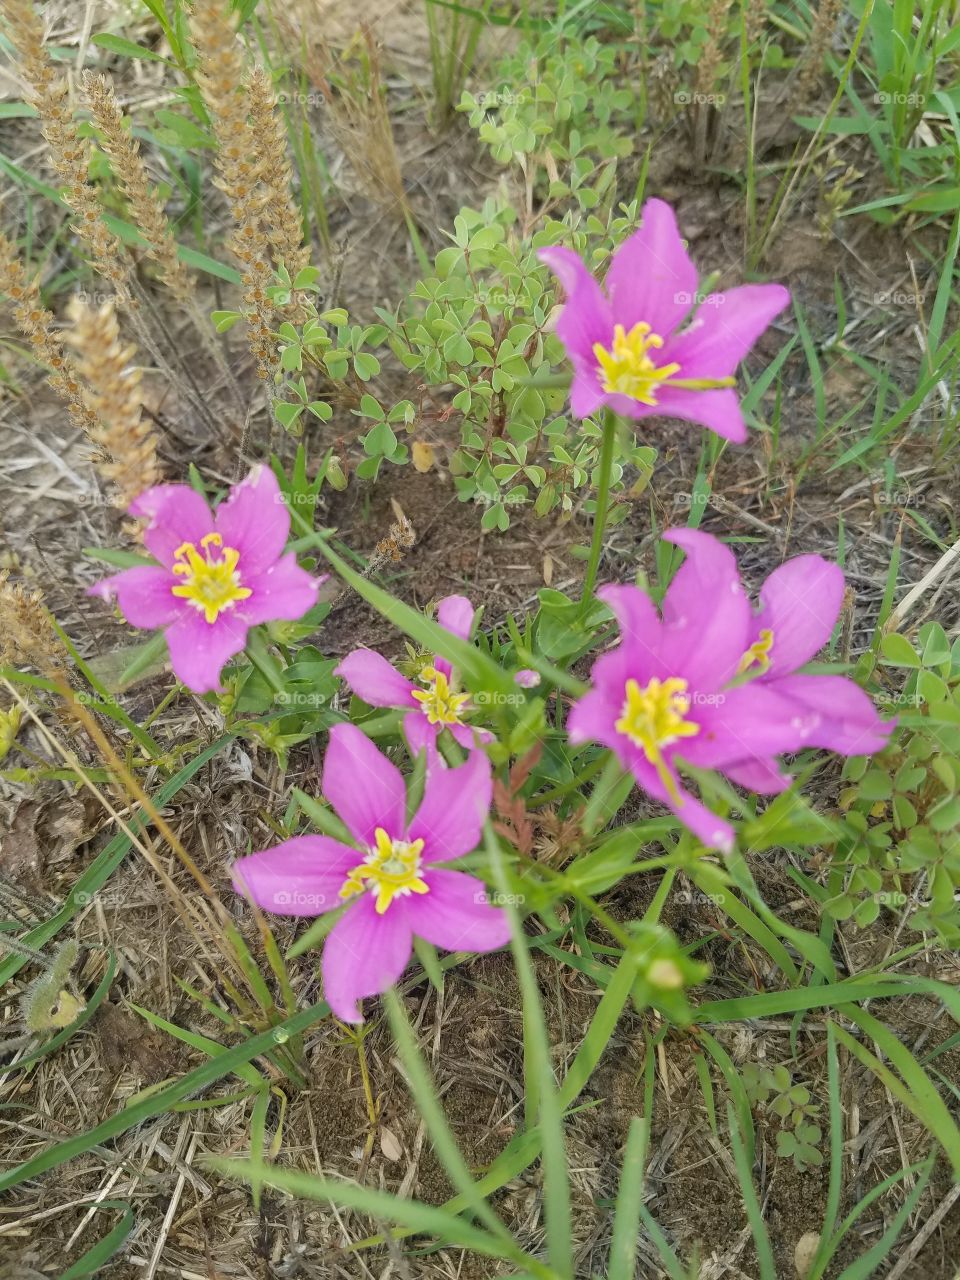 Wildflowers (Galaxy S7)